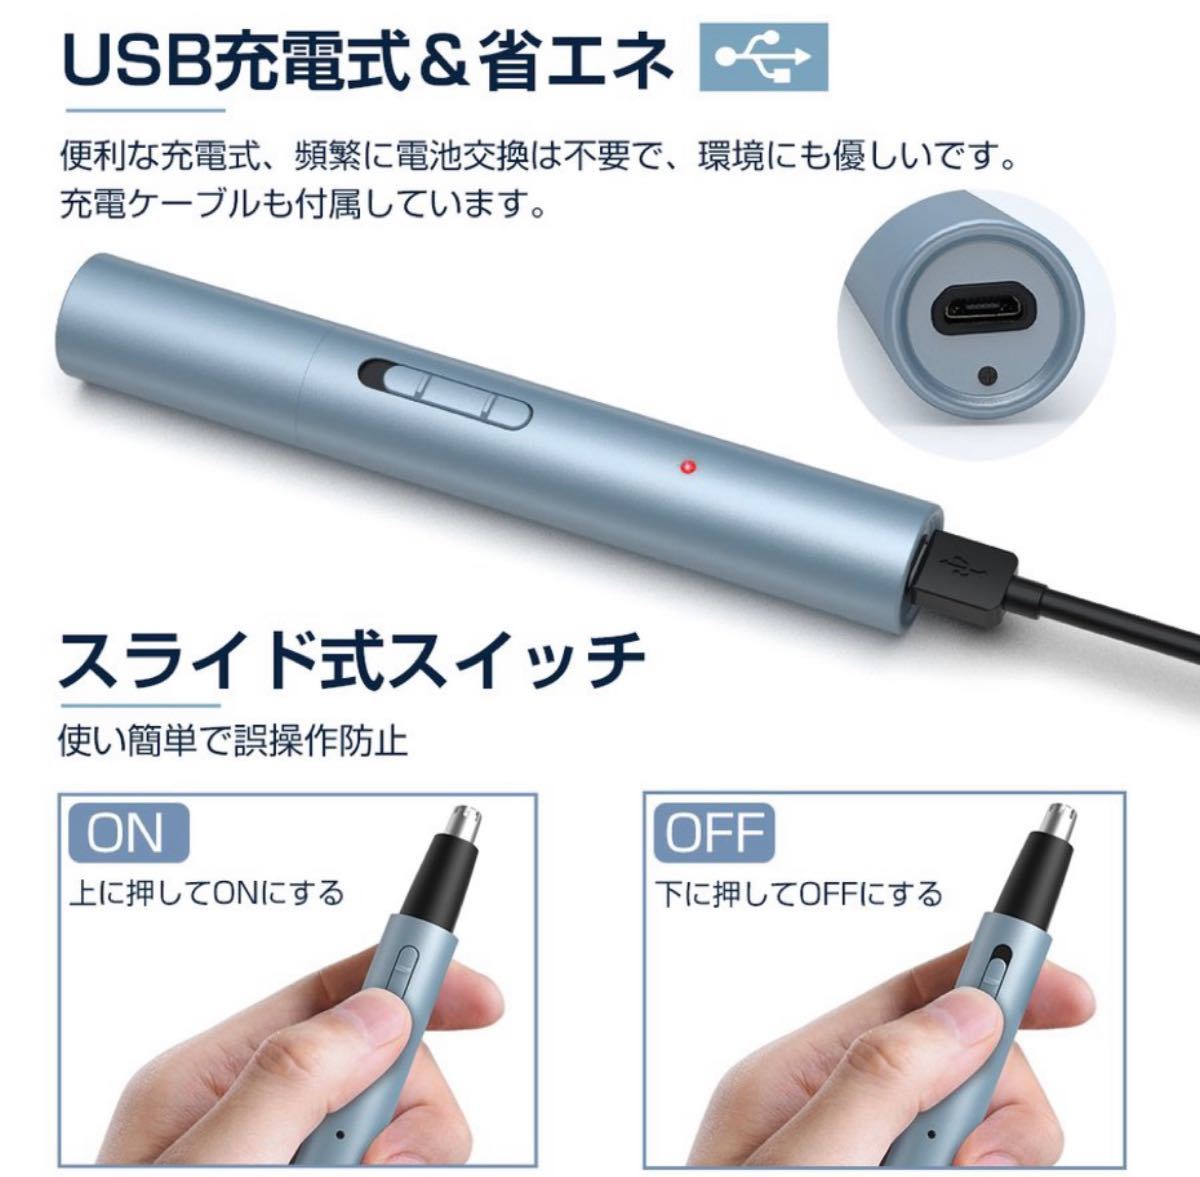 鼻毛カッター 耳毛カッター USB充電式 耳毛 鼻毛切り 電動式カッター